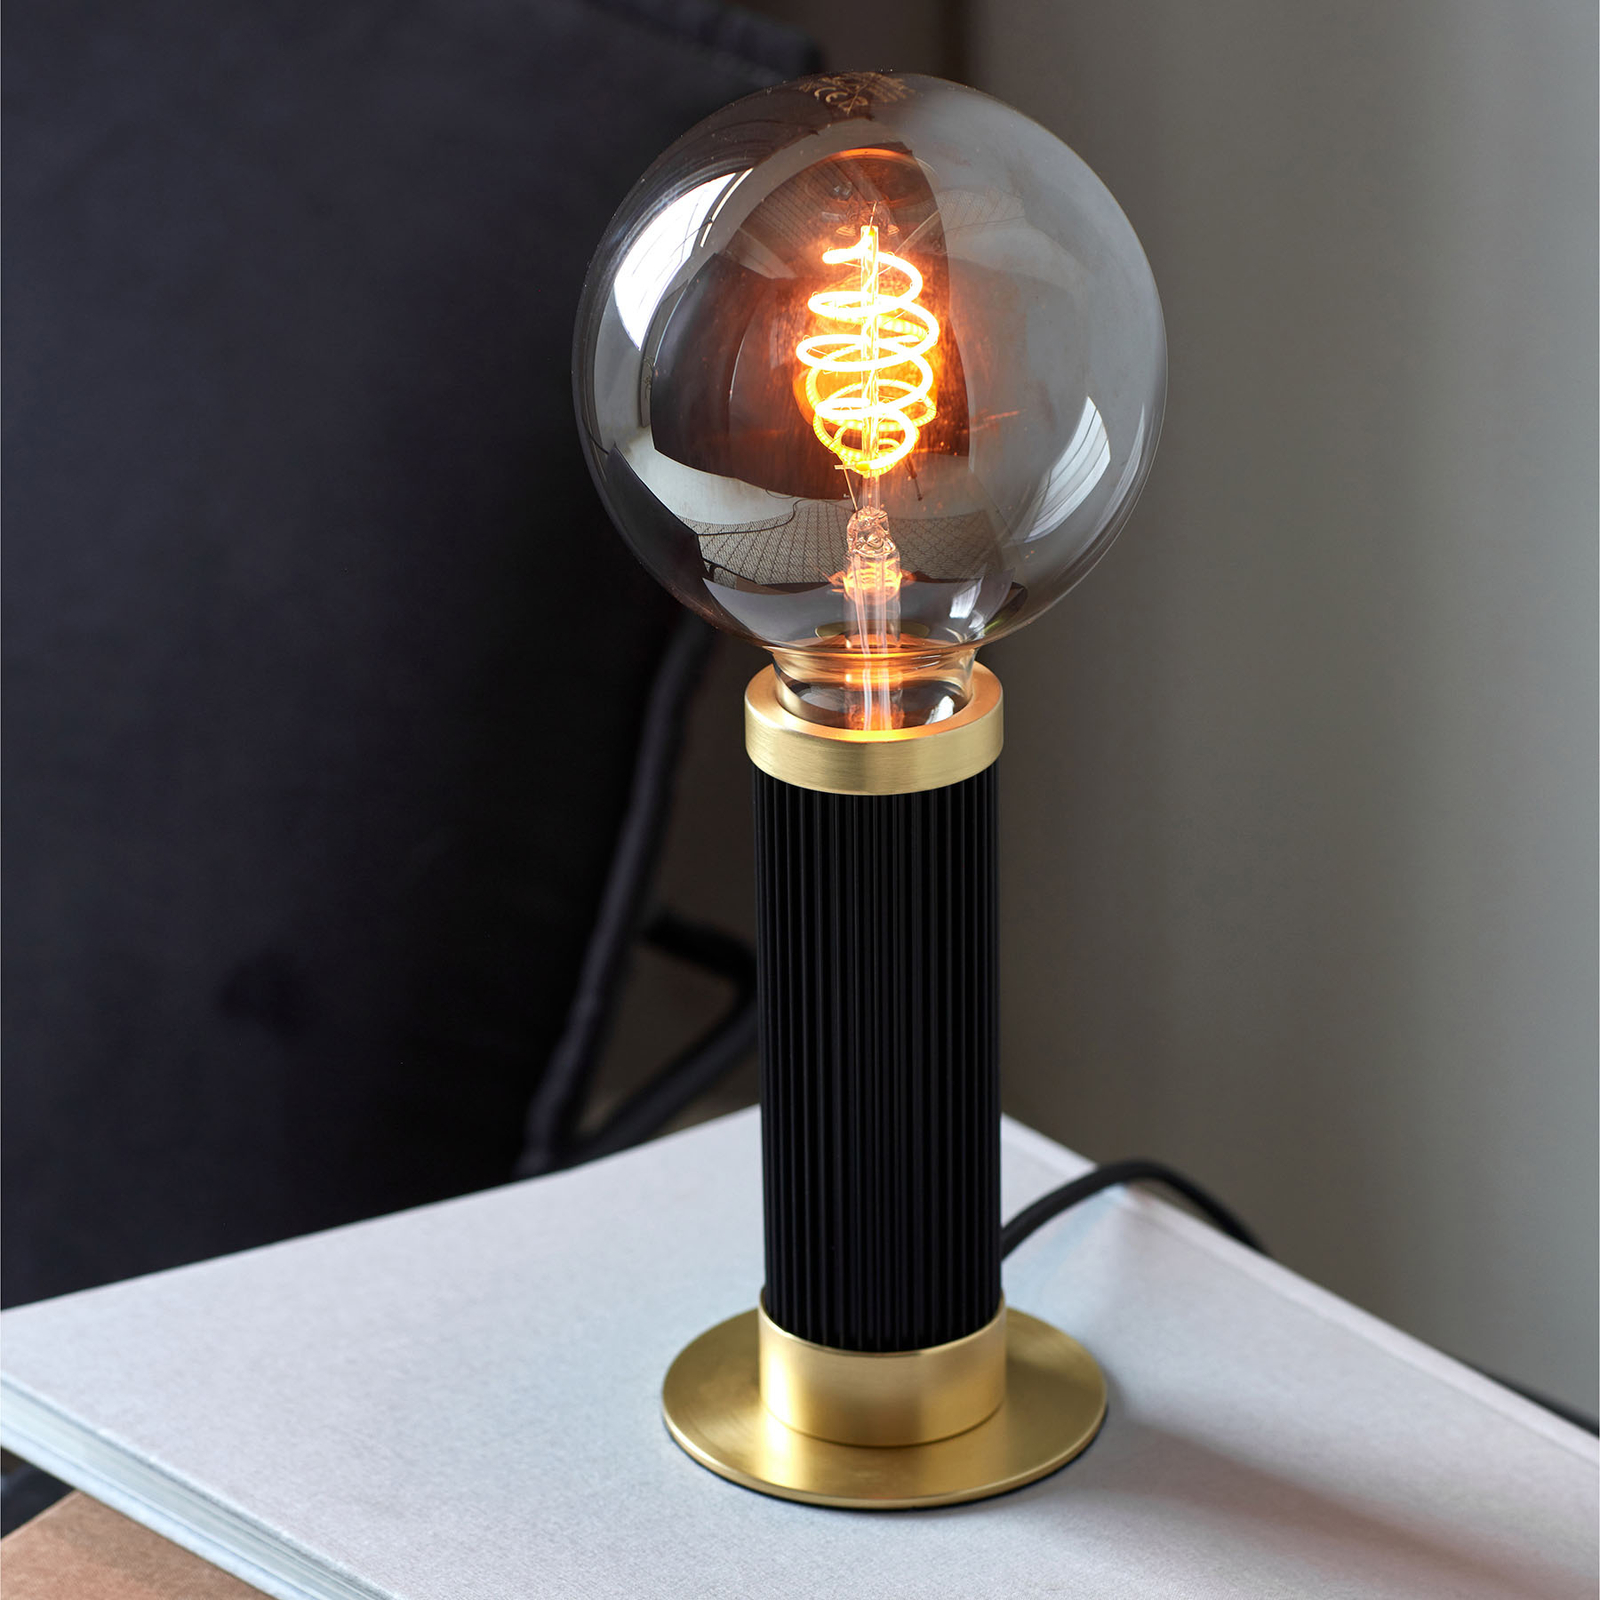 Tafellamp met fitting | Lampen24.be